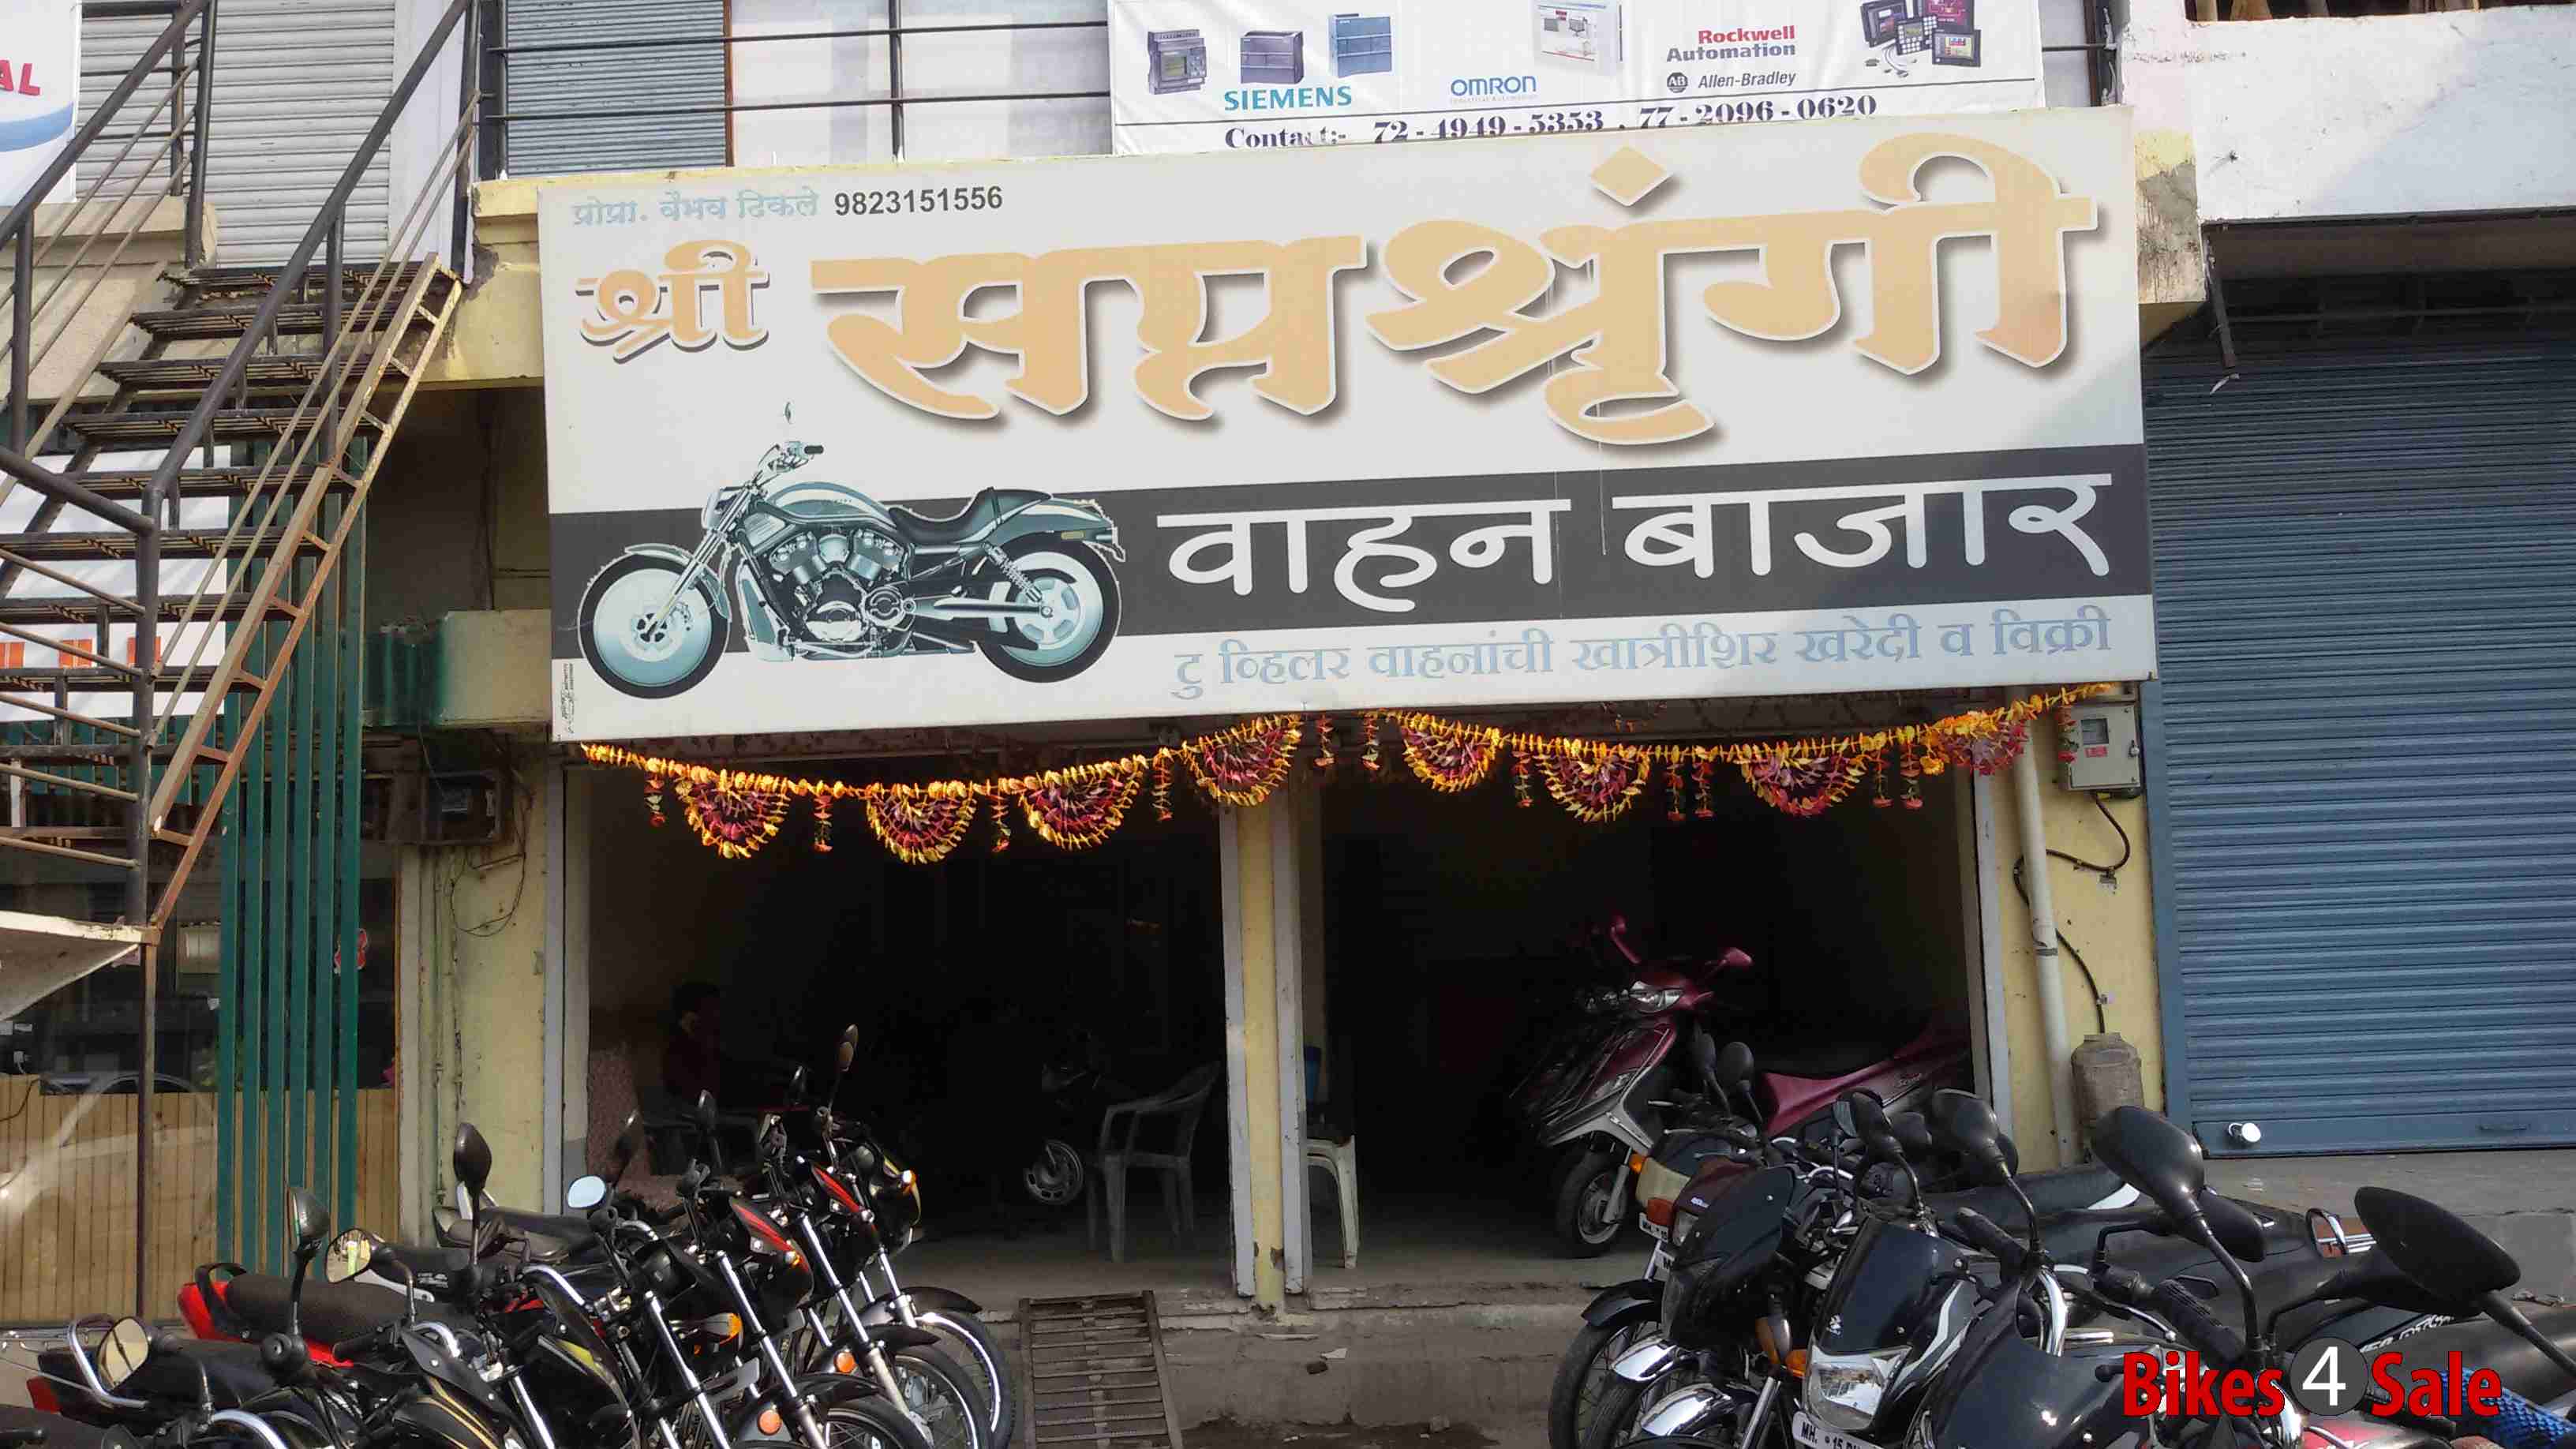 Shri Saptashrungi Vahan Bazaar